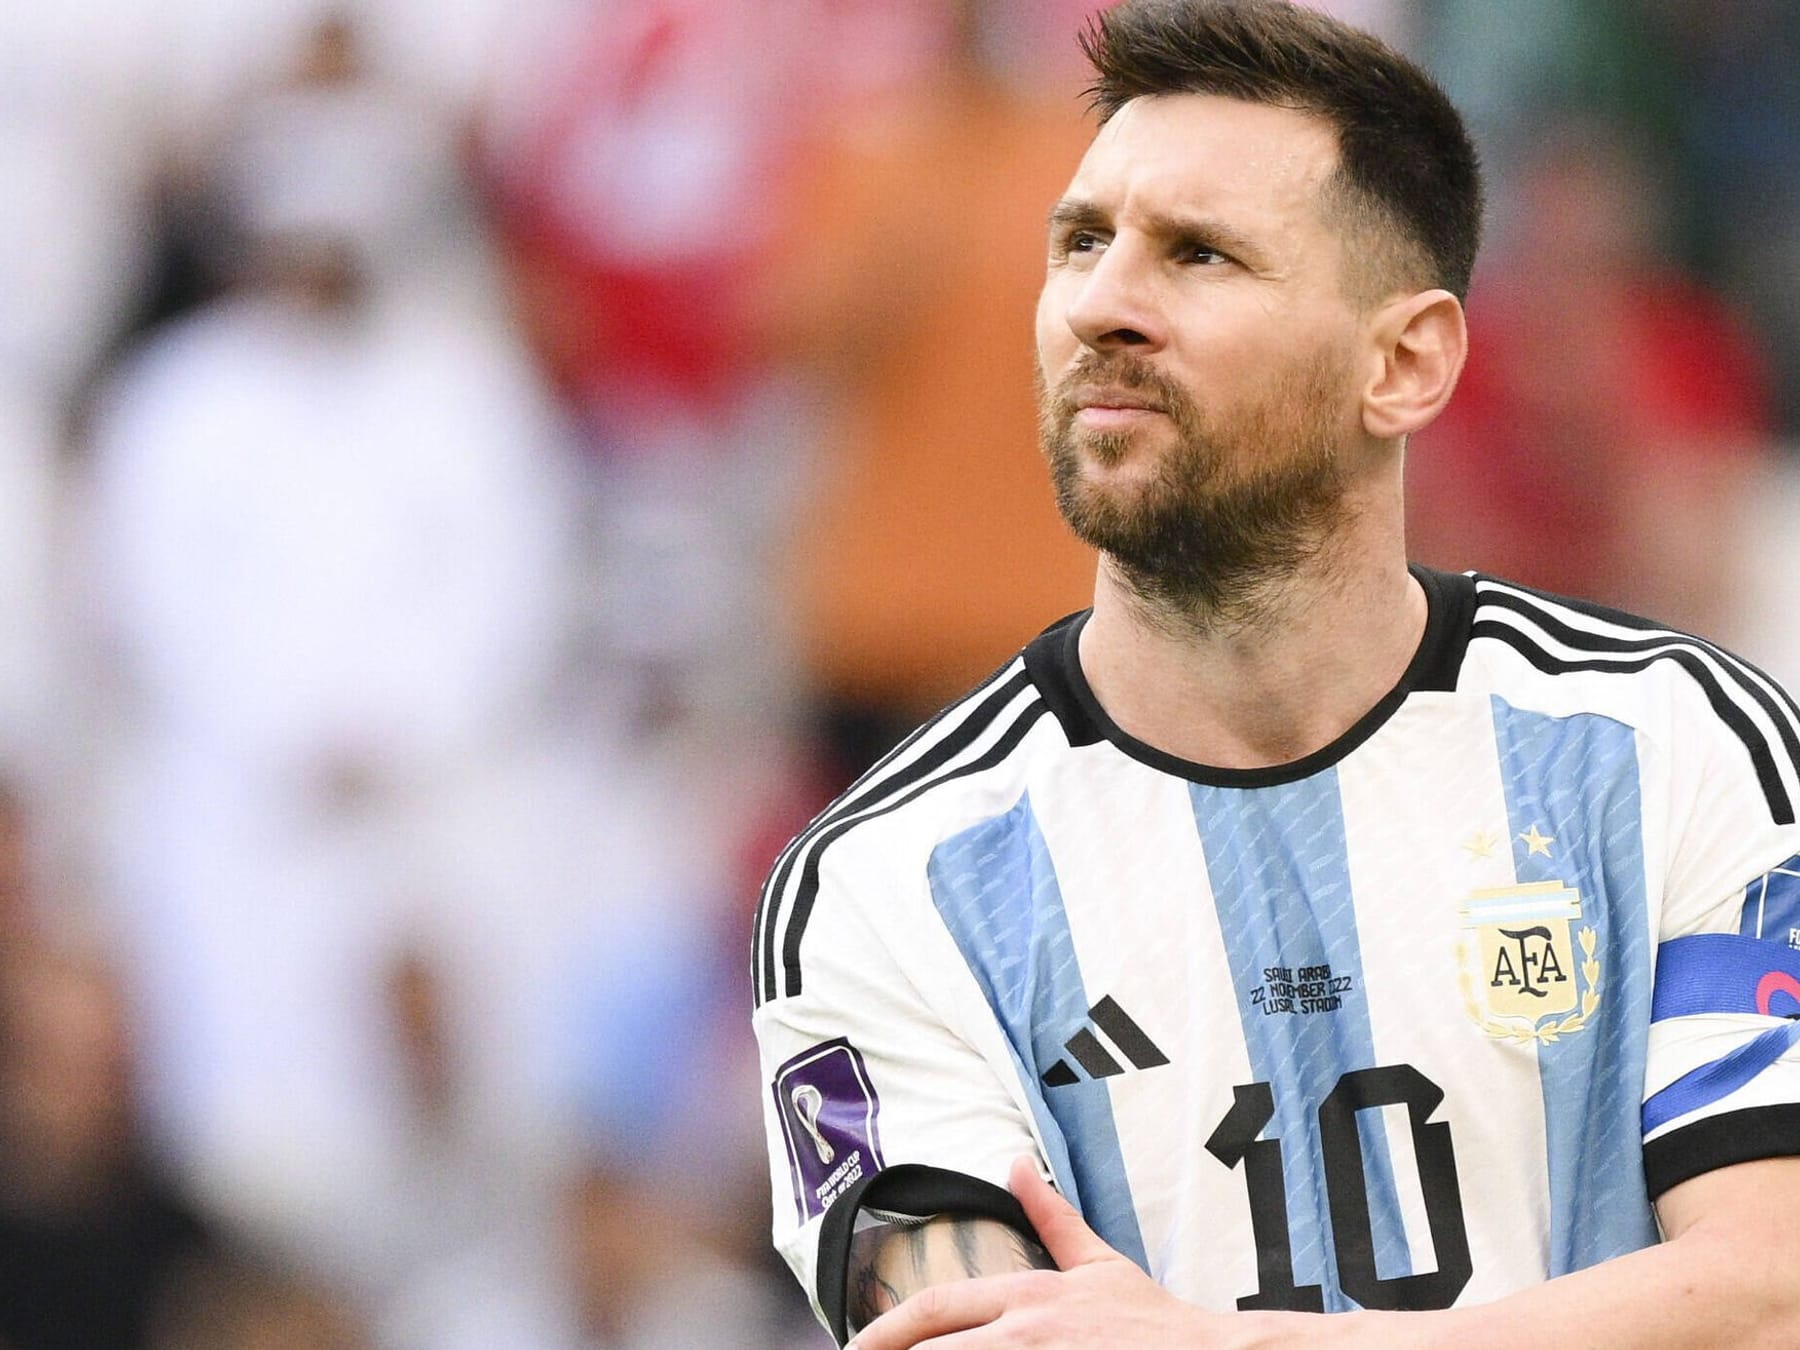 Katar-WM 2022 Lionel Messis letzte Chance droht zum Debakel zu werden